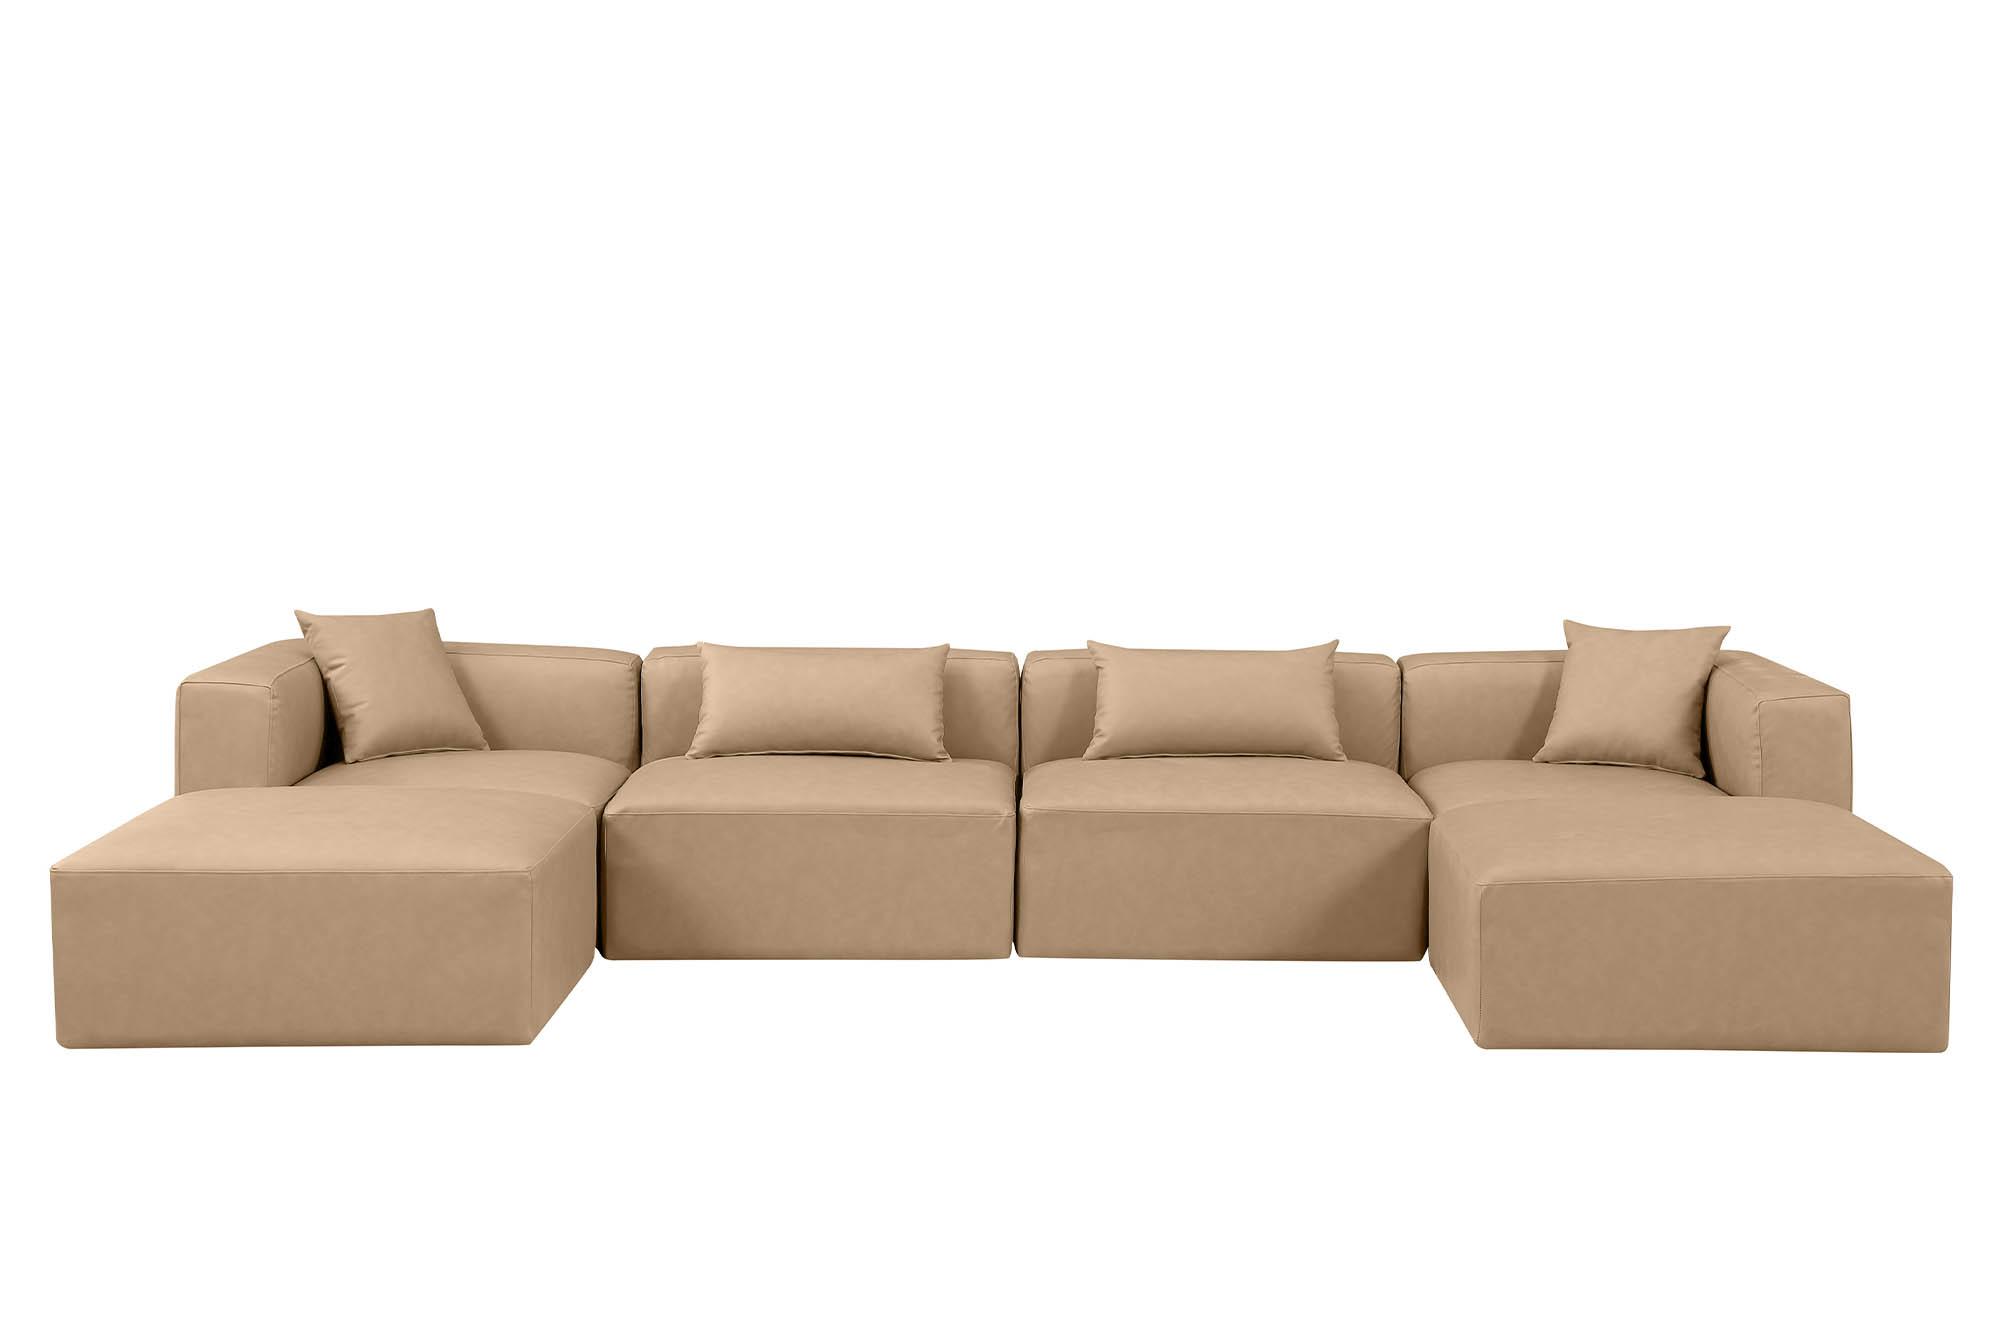 

    
Meridian Furniture CUBE 668Tan-Sec6B Modular Sectional Sofa Tan 668Tan-Sec6B
